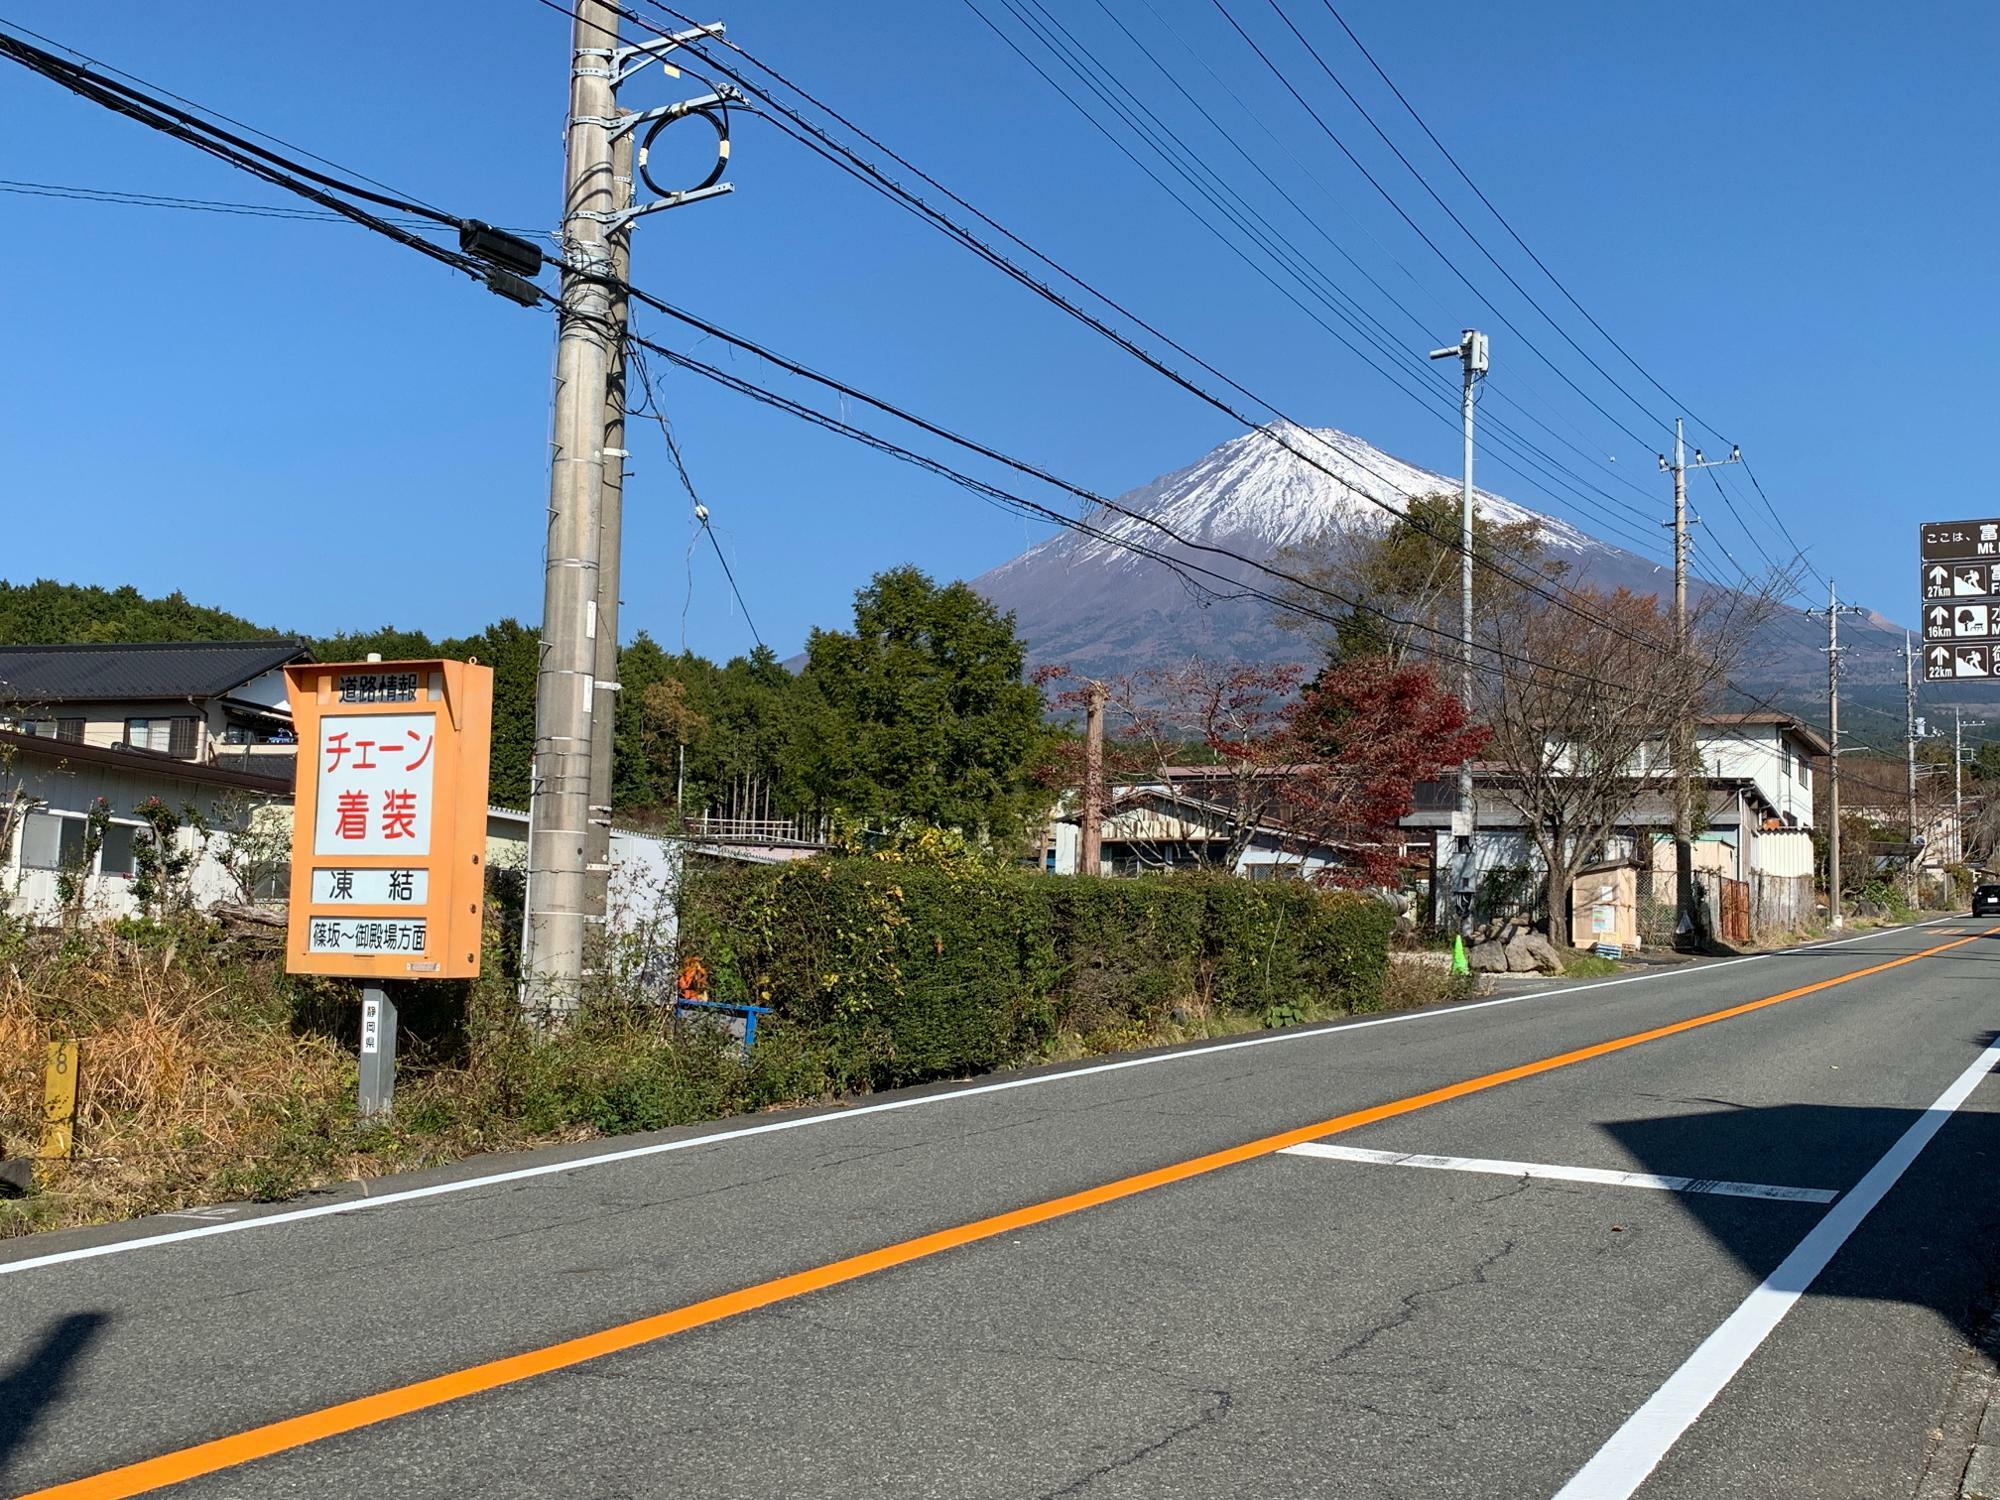 登山道篠坂の信号から約1分ほどです